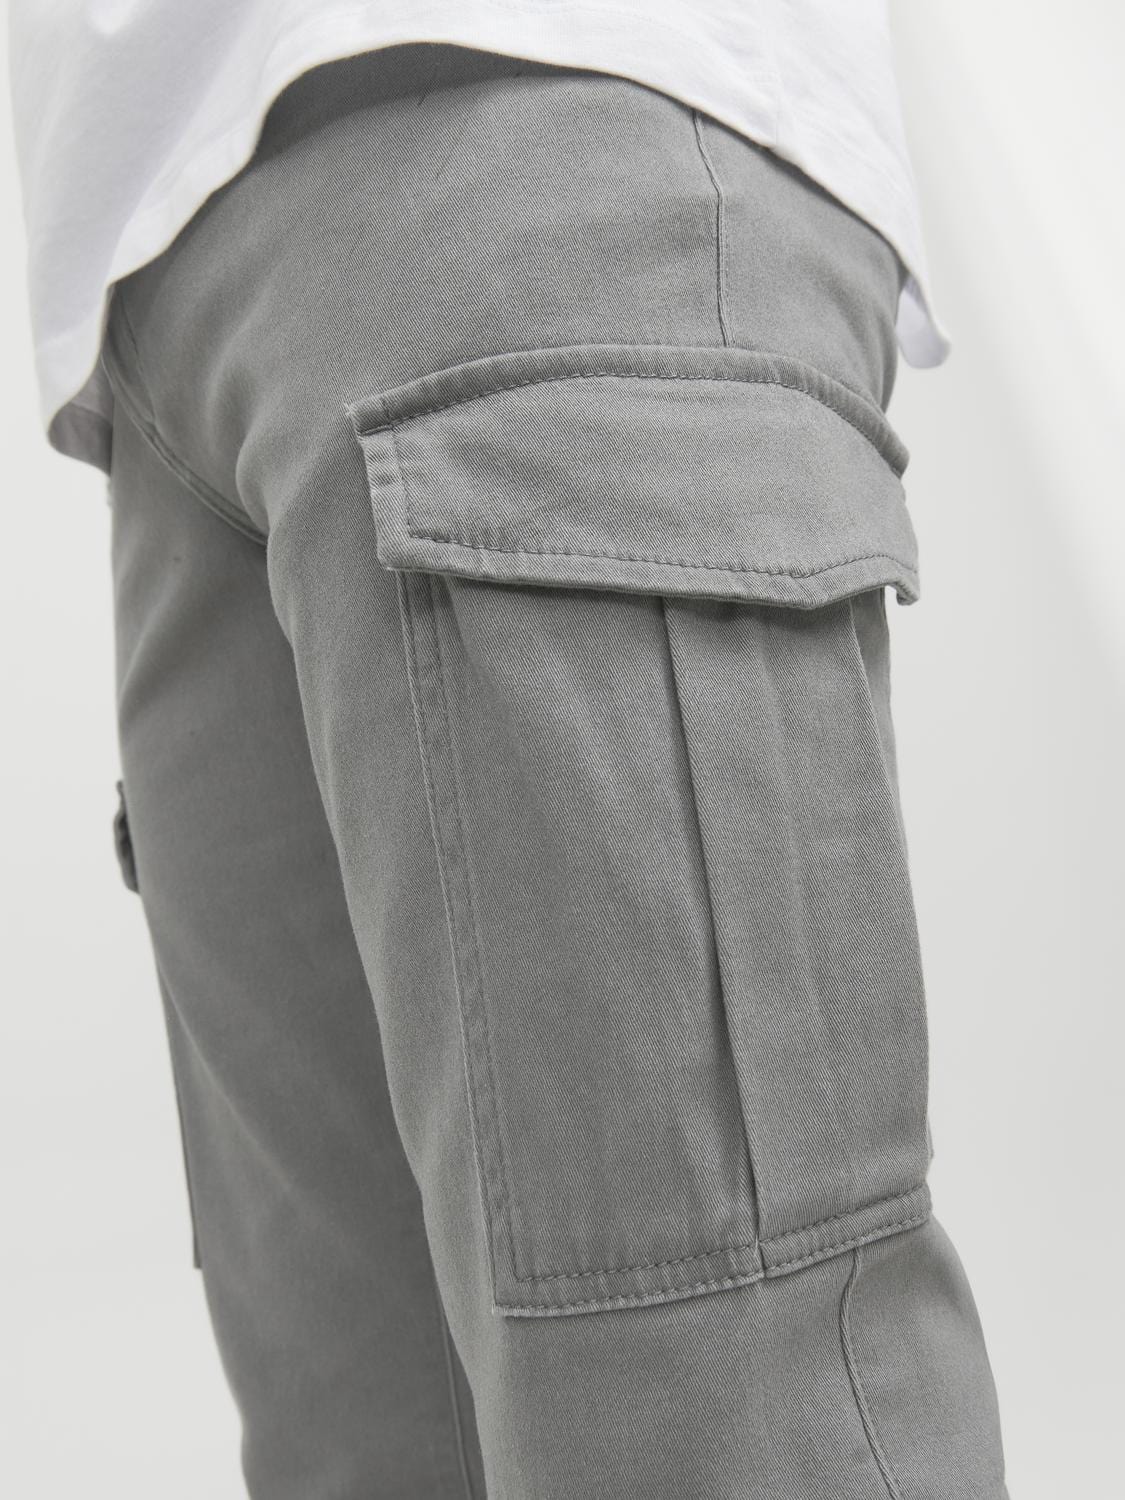 Pantalón cargo gris claro -JPSTMARCO